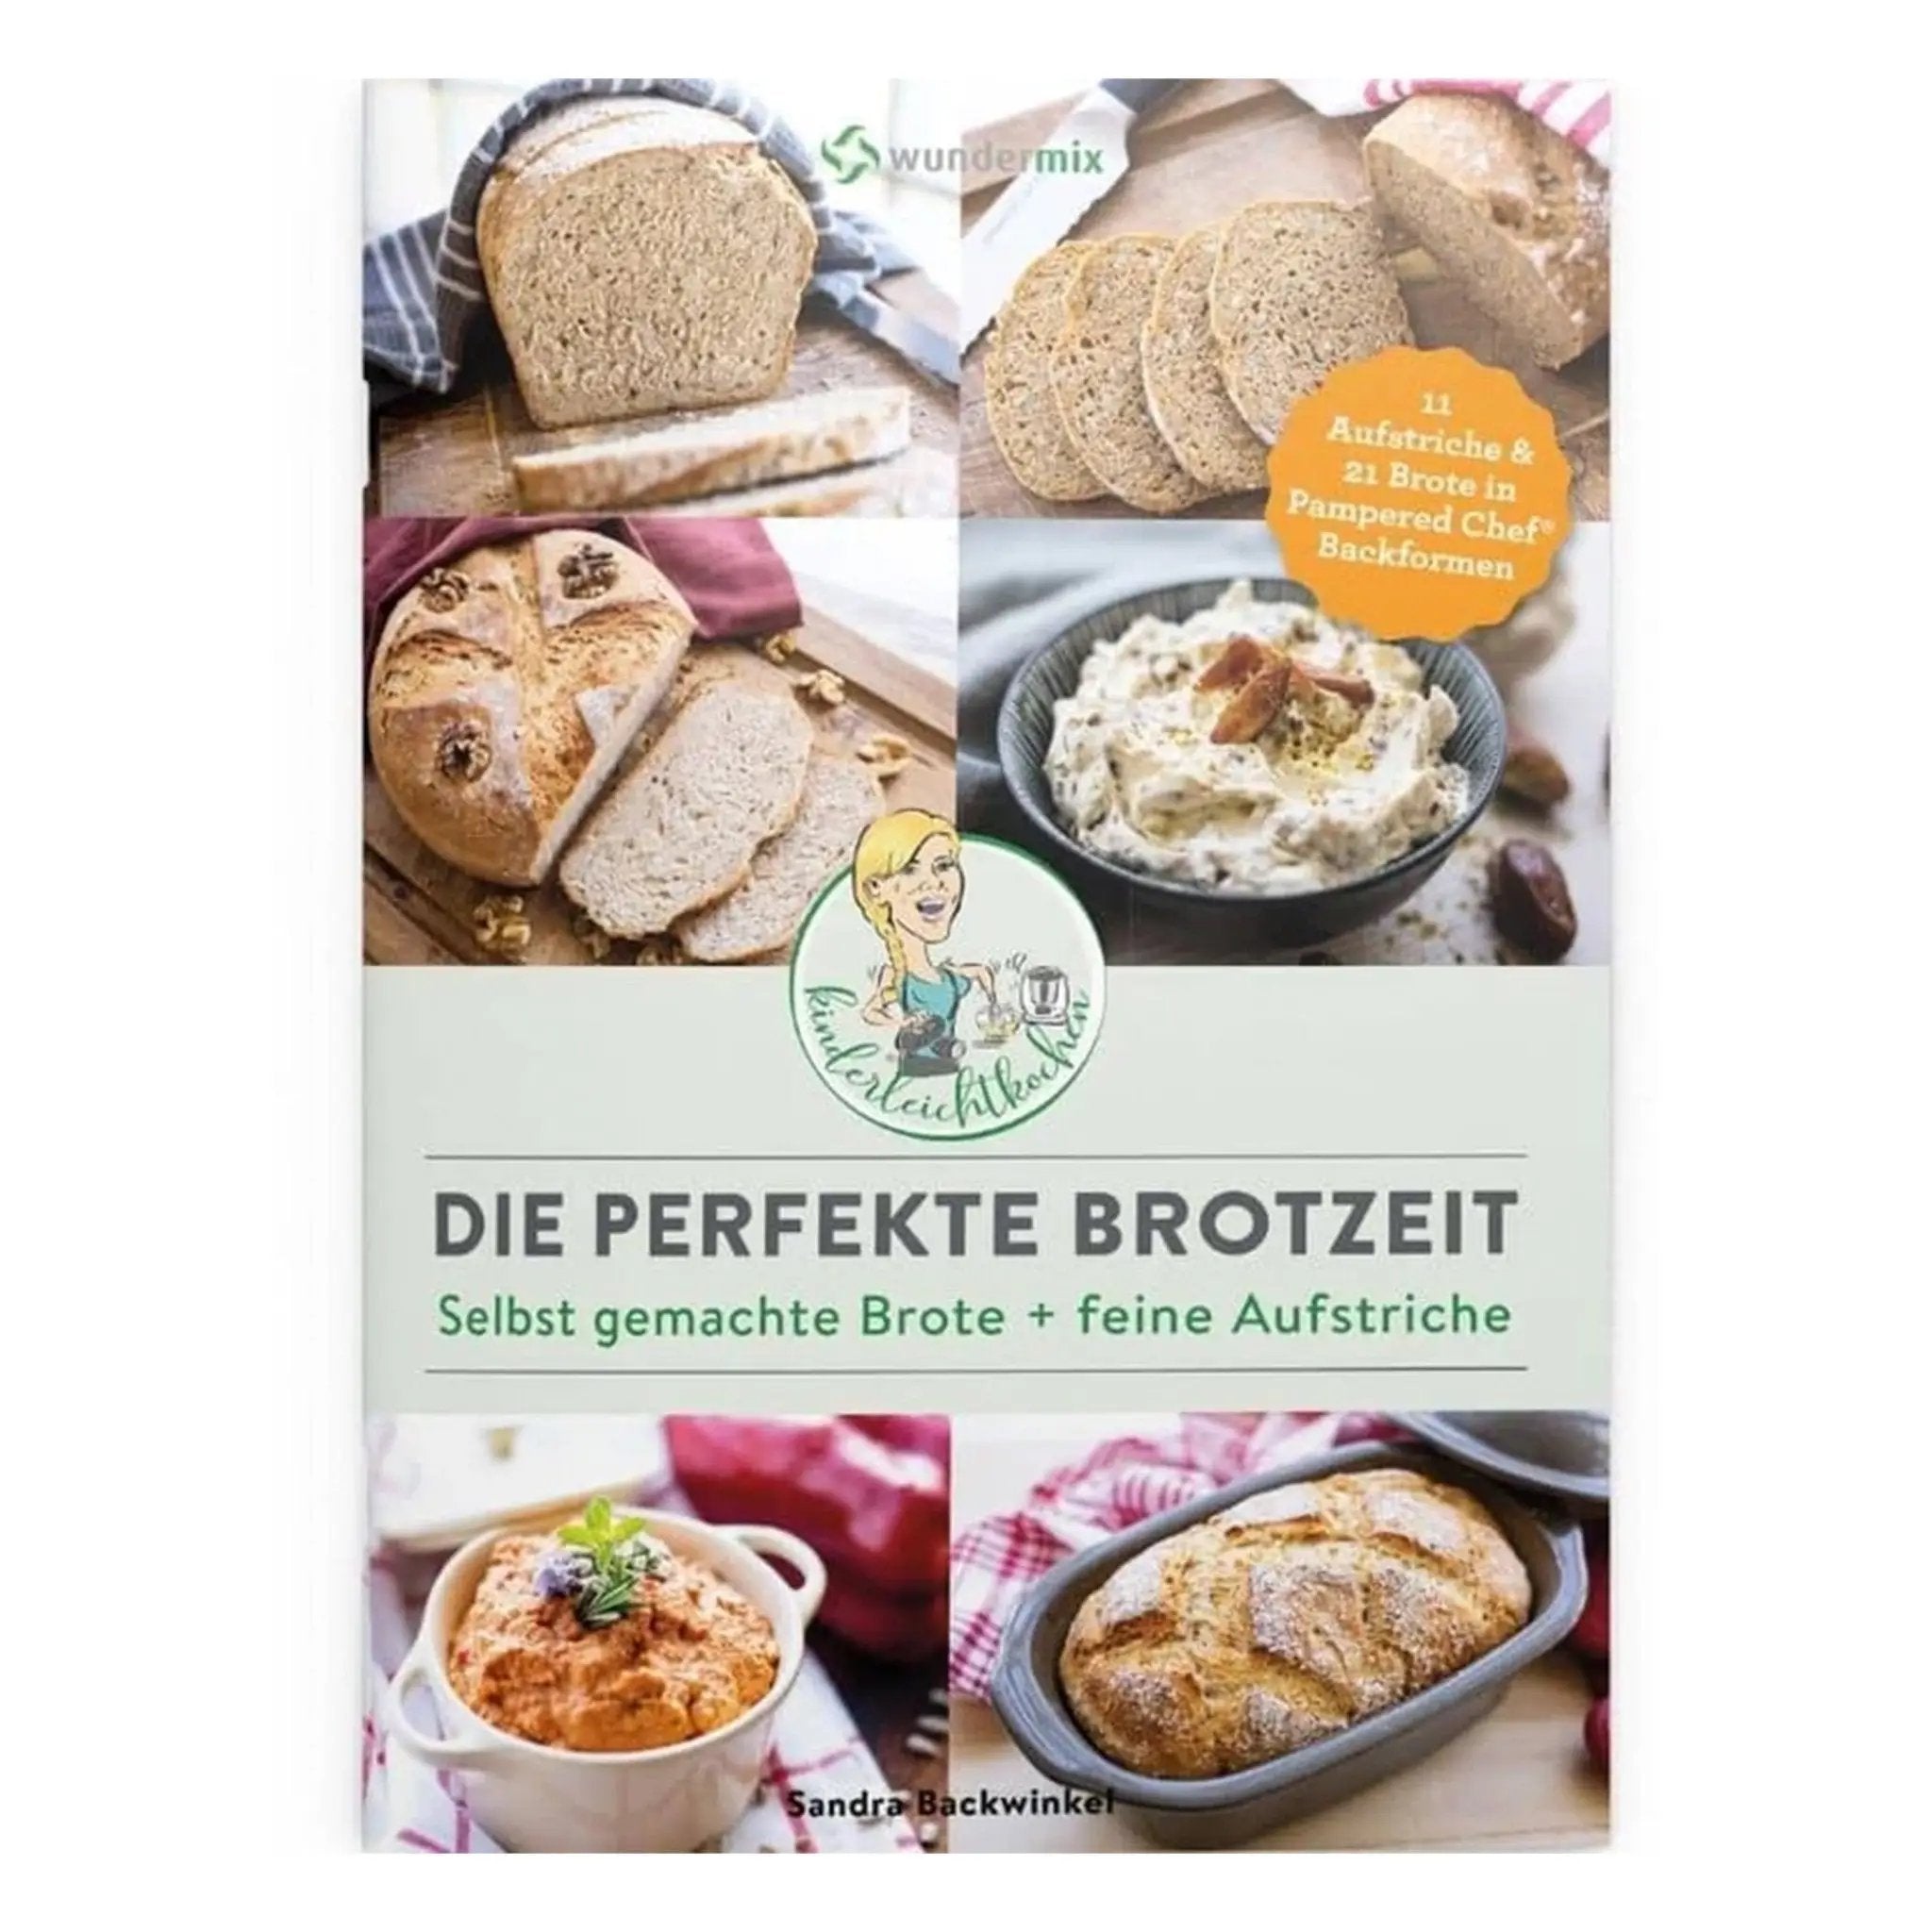 Die perfekte Brotzeit | Selbst gemachte Brote + feine Aufstriche - Wundermix GmbH